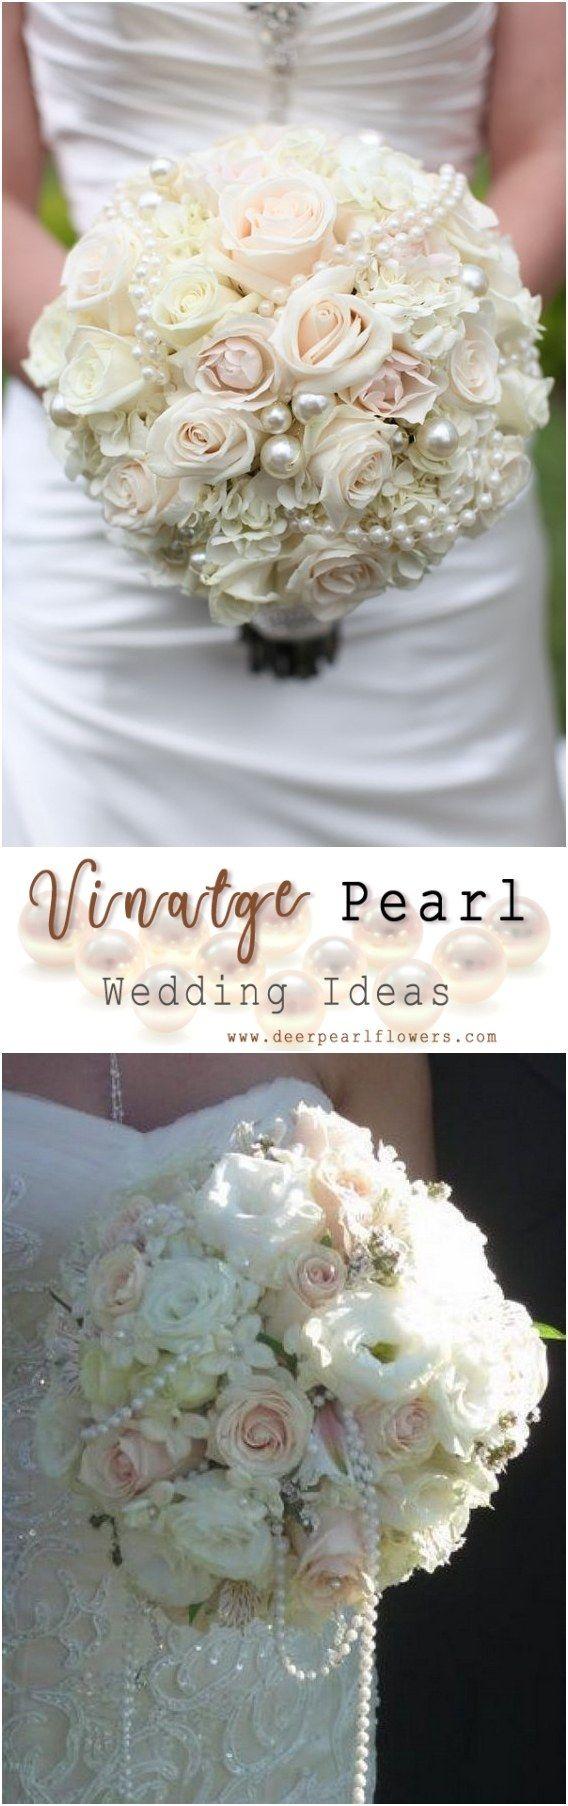 Wedding - 35 Chic Vintage Pearl Wedding Ideas You’ll Love